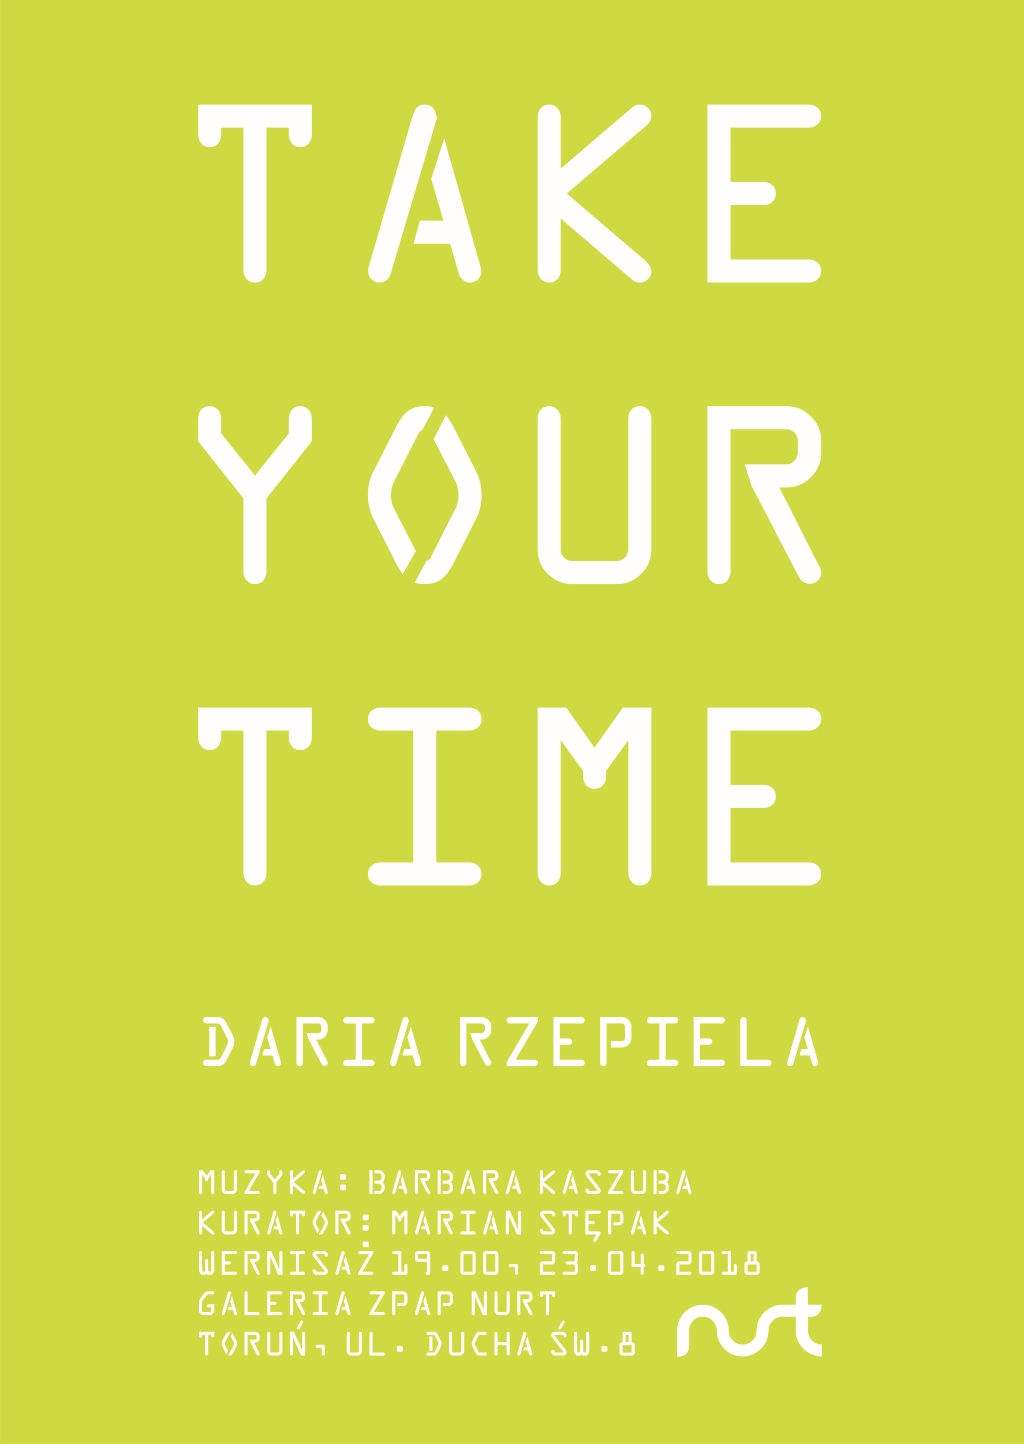 Zapraszamy na wystawę ‘TAKE YOUR TIME’ – Daria Rzepiela